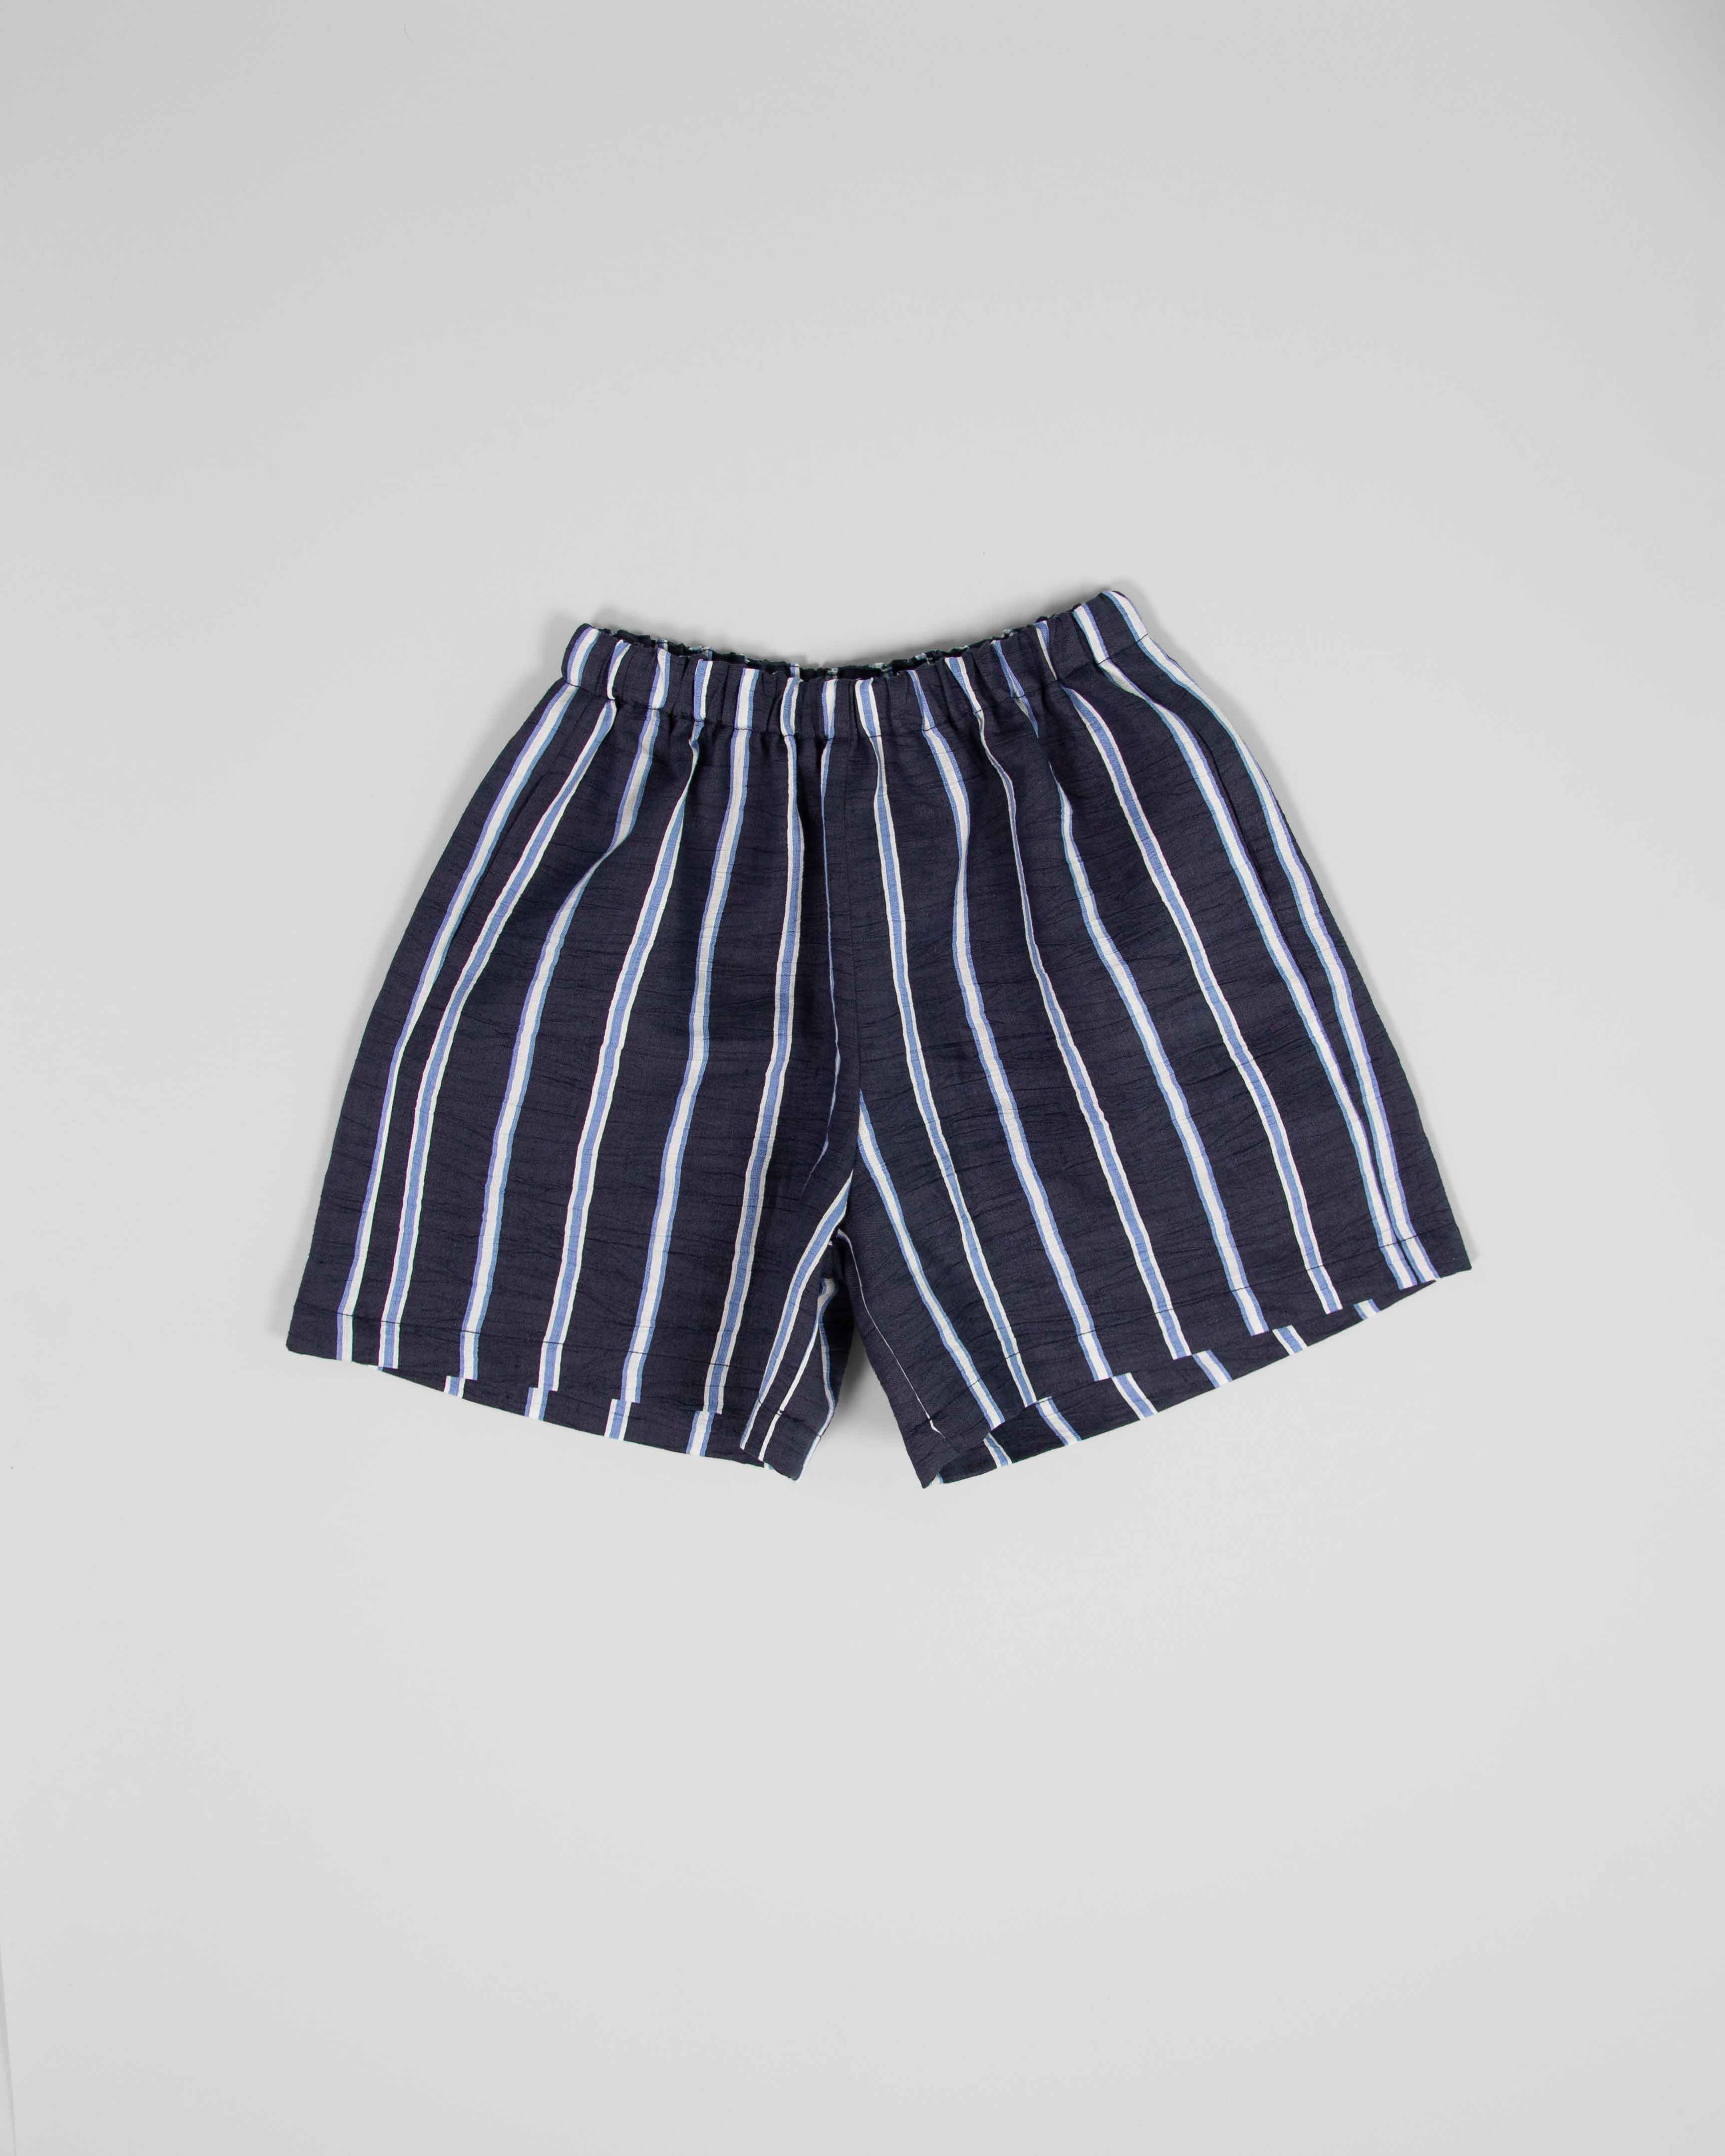 Tangerine - stripe shorts - navy/baby blue